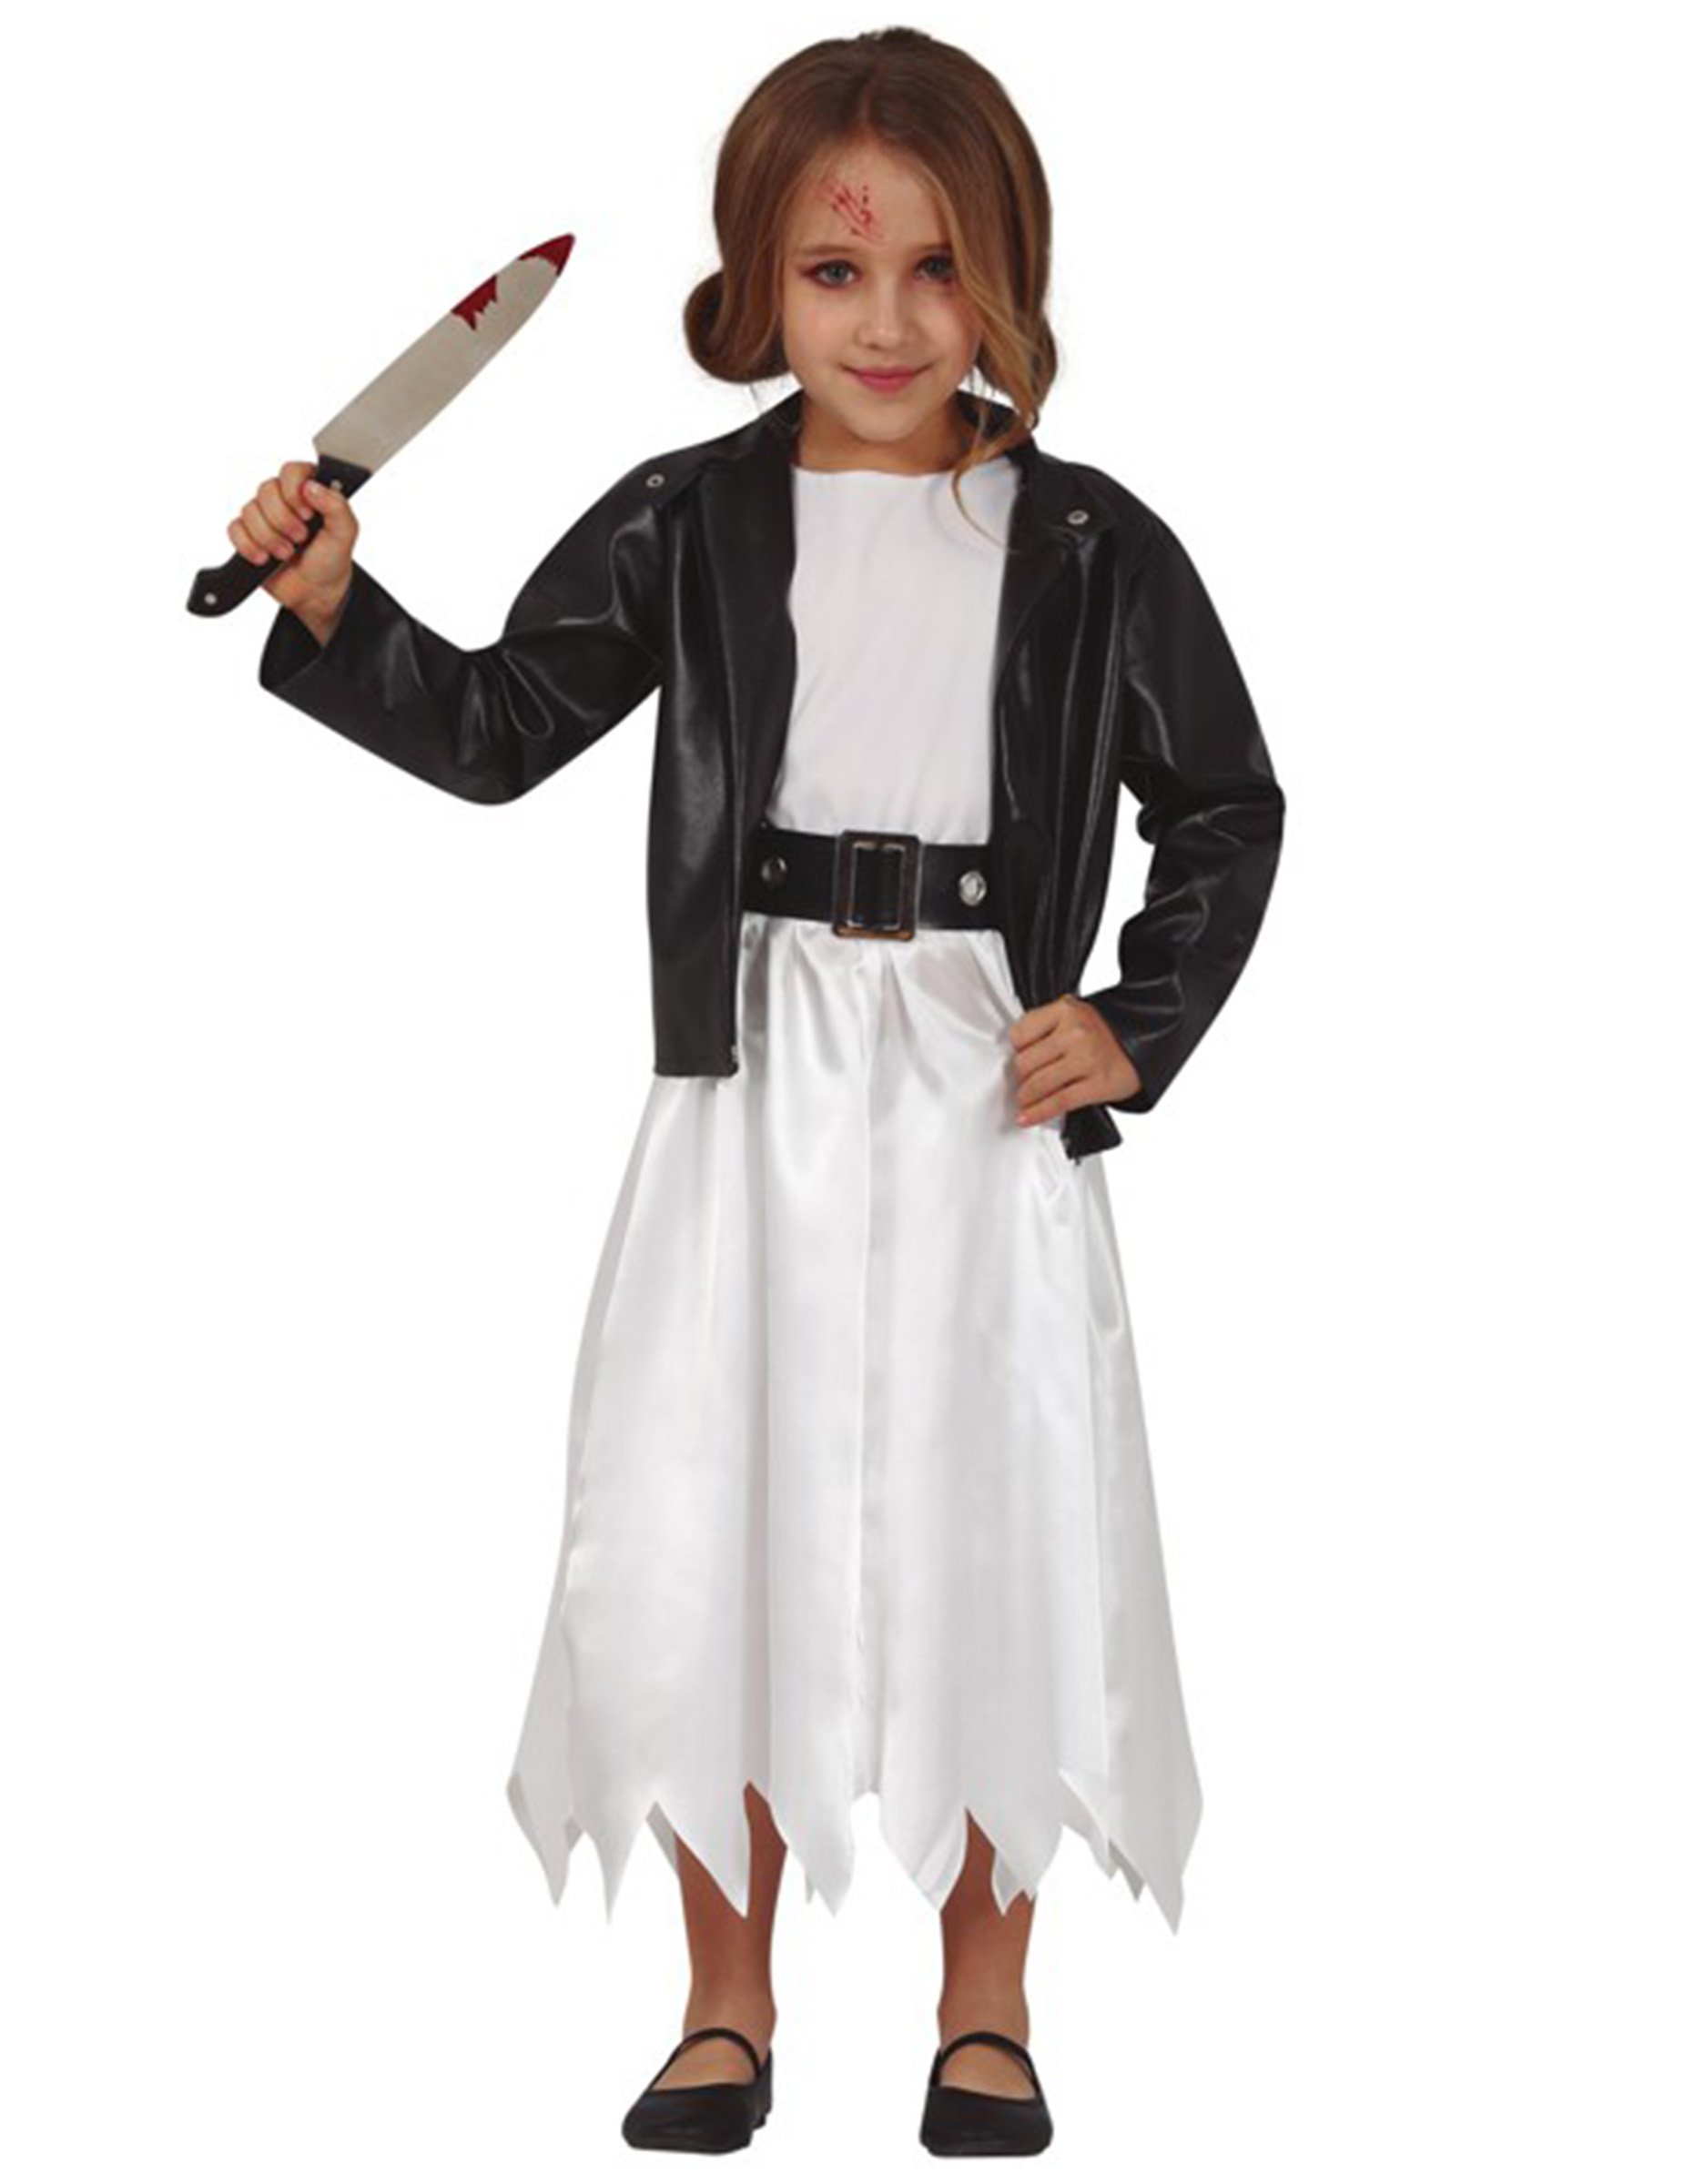 Killerpuppen-Kostüm für Mädchen Halloweenkostüm weiss-schwarz von FIESTAS GUIRCA, S.L.